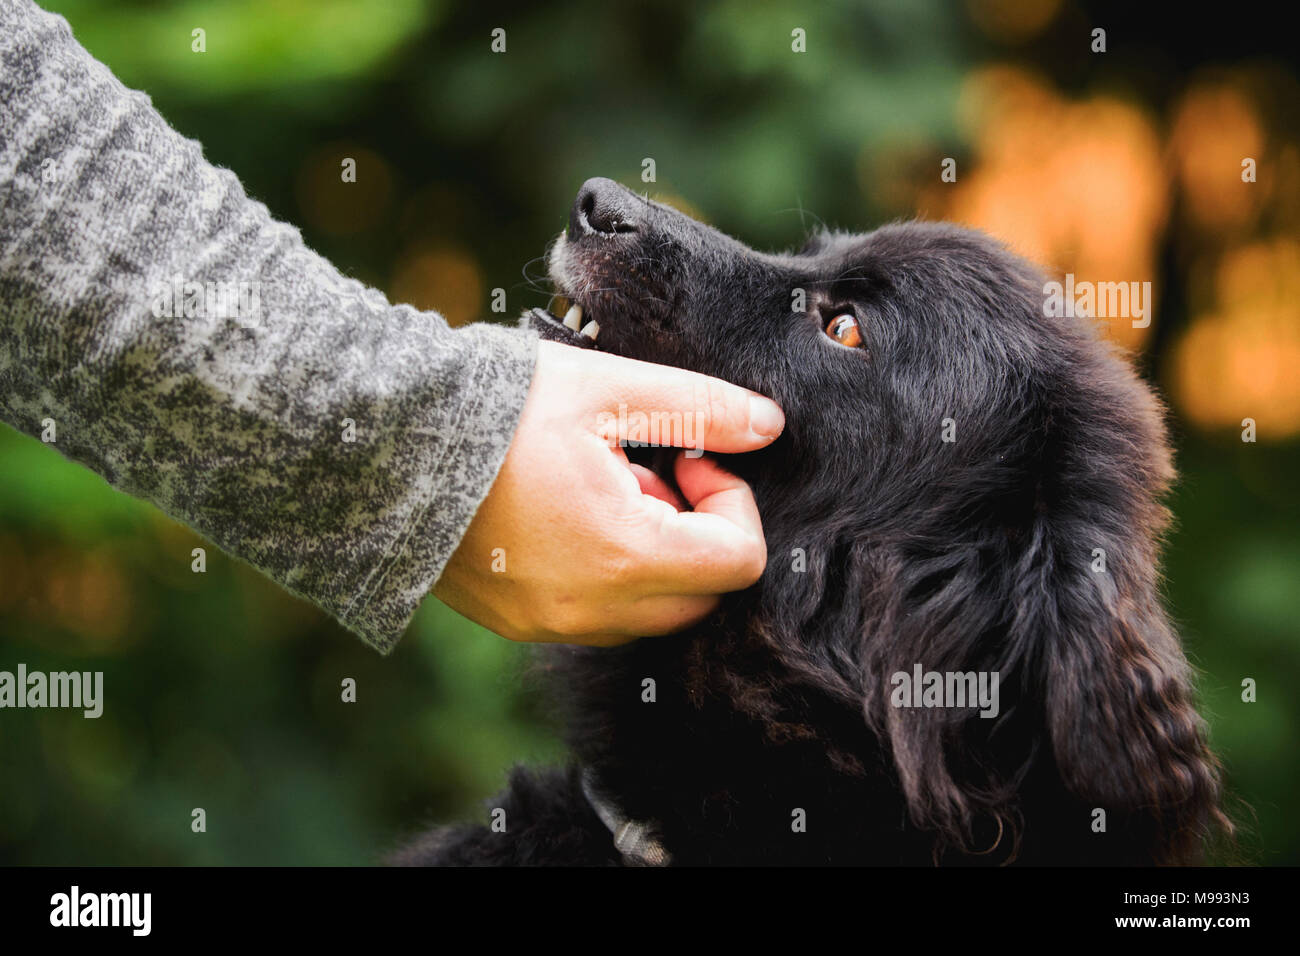 Eine weibliche Hand Petting einen niedlichen Hund. Unscharfer Hintergrund, Grün und Orange. Stockfoto